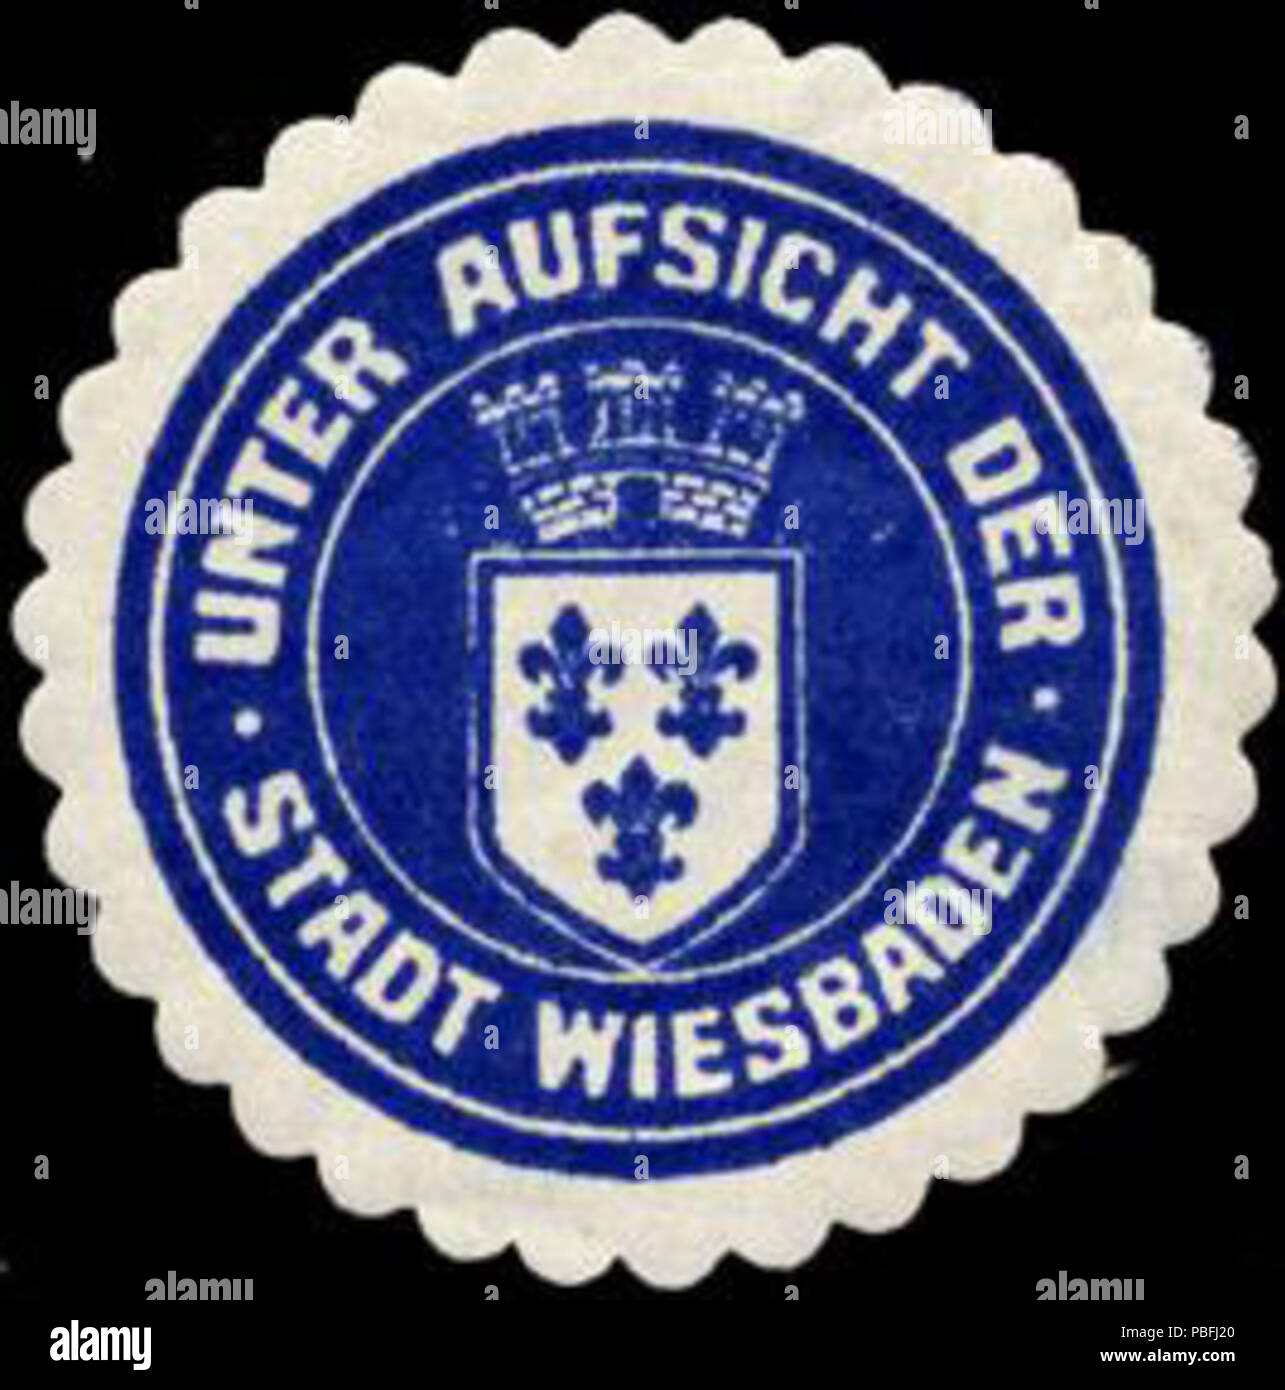 1532 Siegelmarke Unter Aufsicht der Stadt Wiesbaden W0210891 Stock Photo